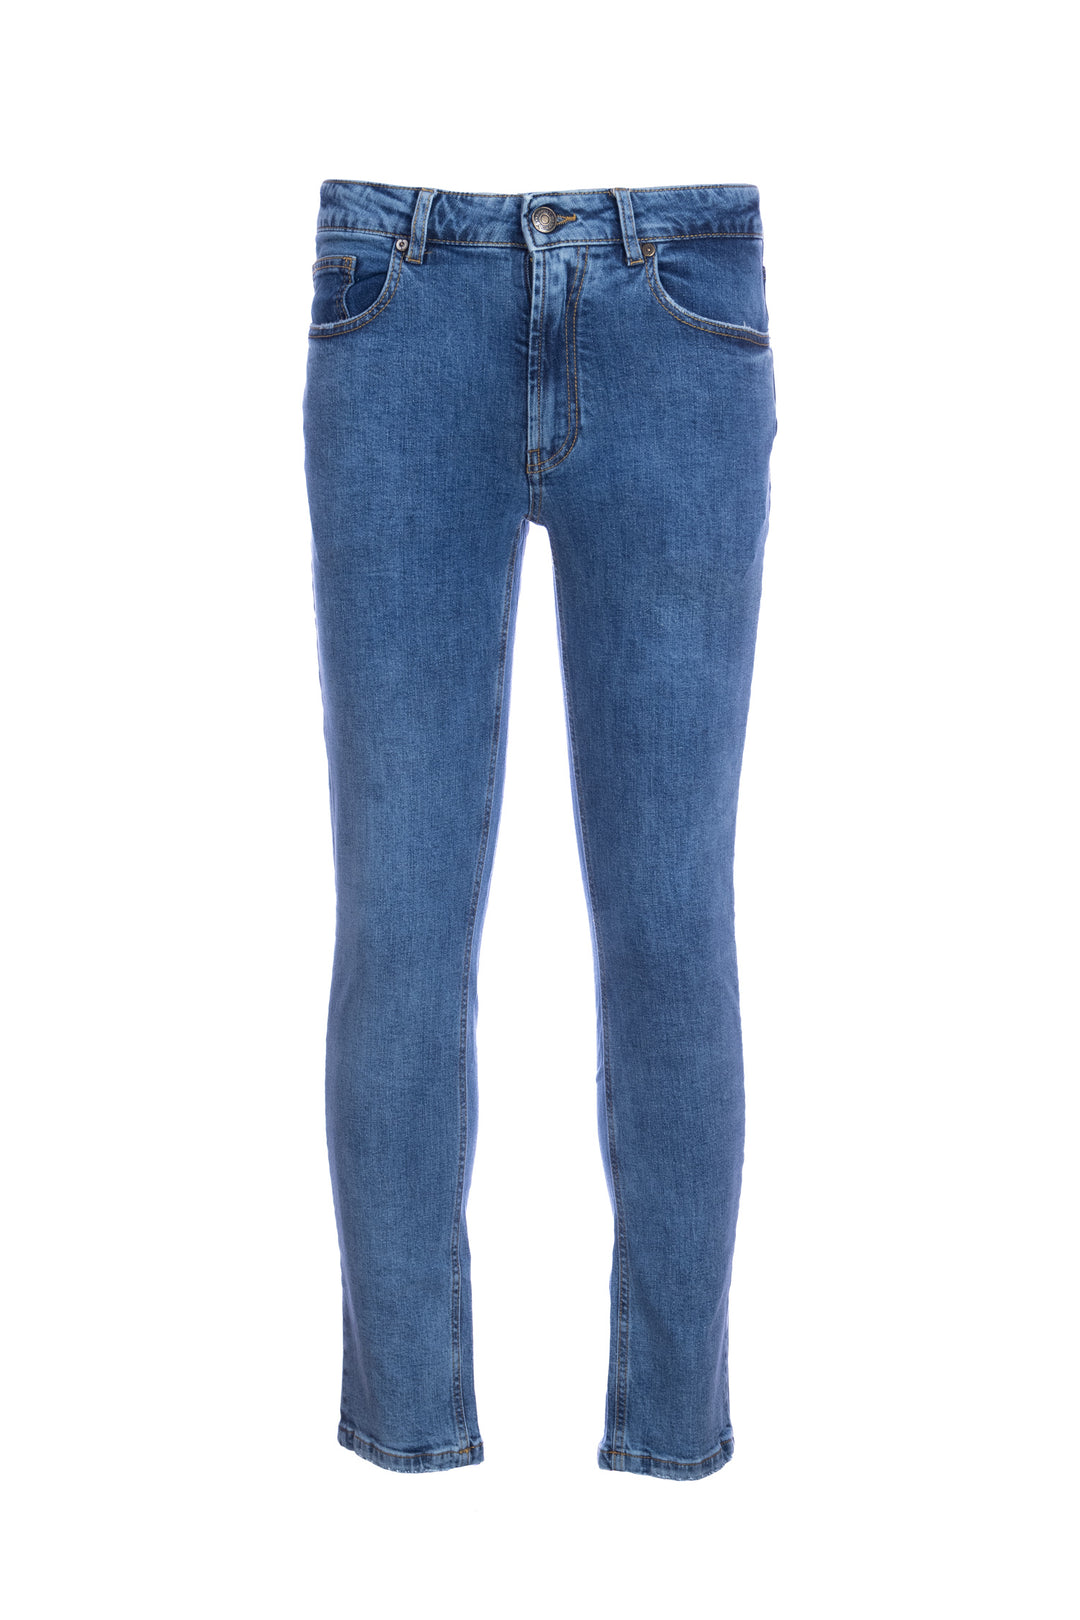 YAN SIMMON Jeans 5 tasche in cotone stretch lavaggio chiaro - Mancinelli 1954